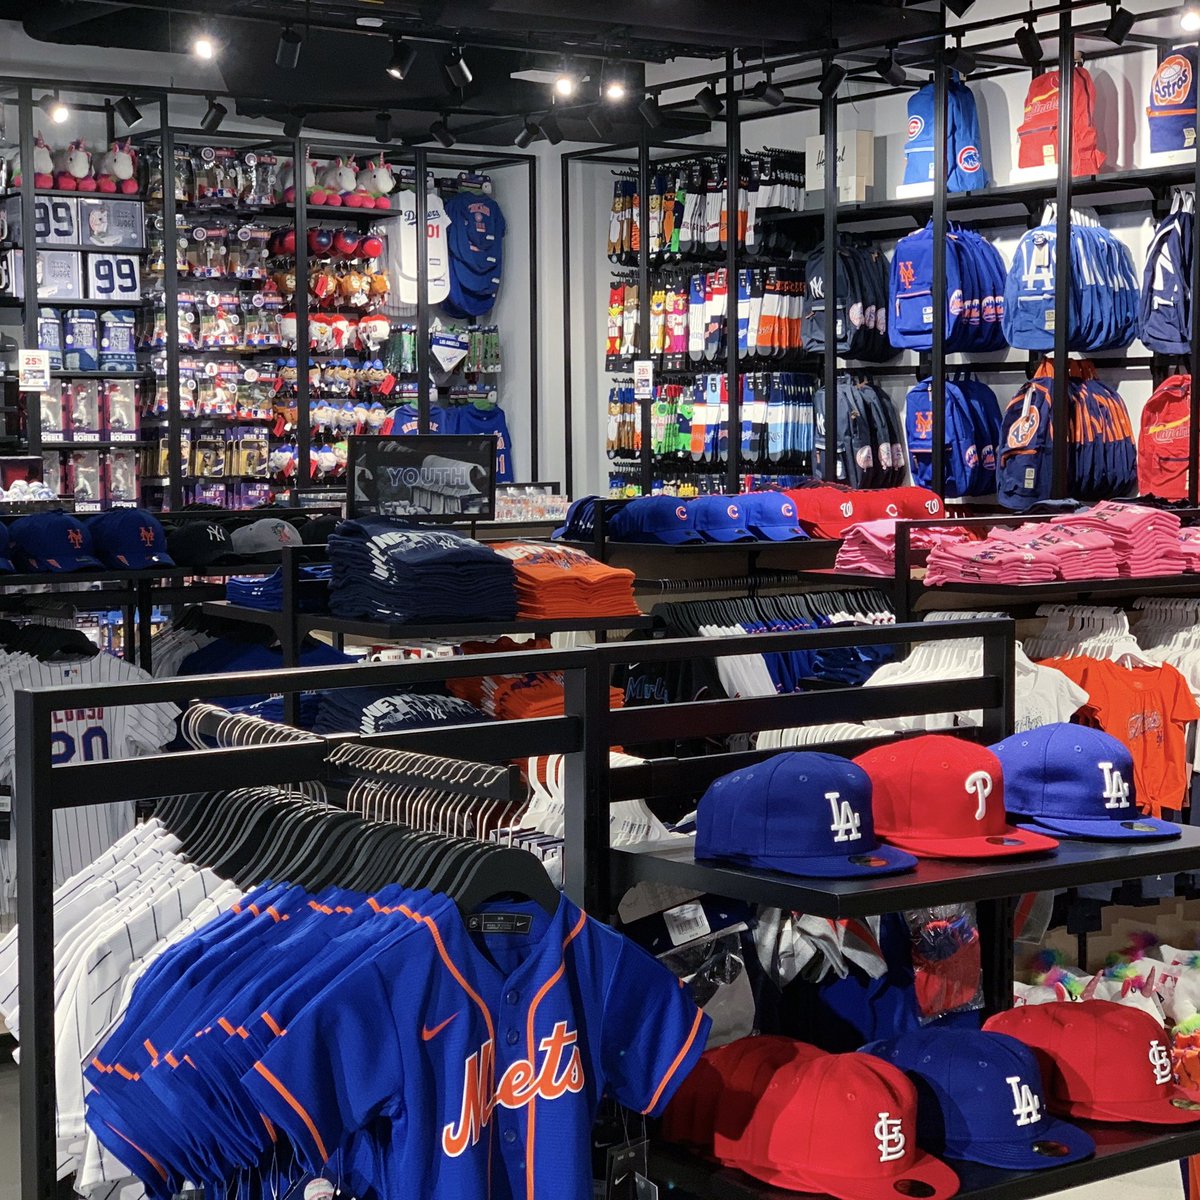 MLB Store  New York NY